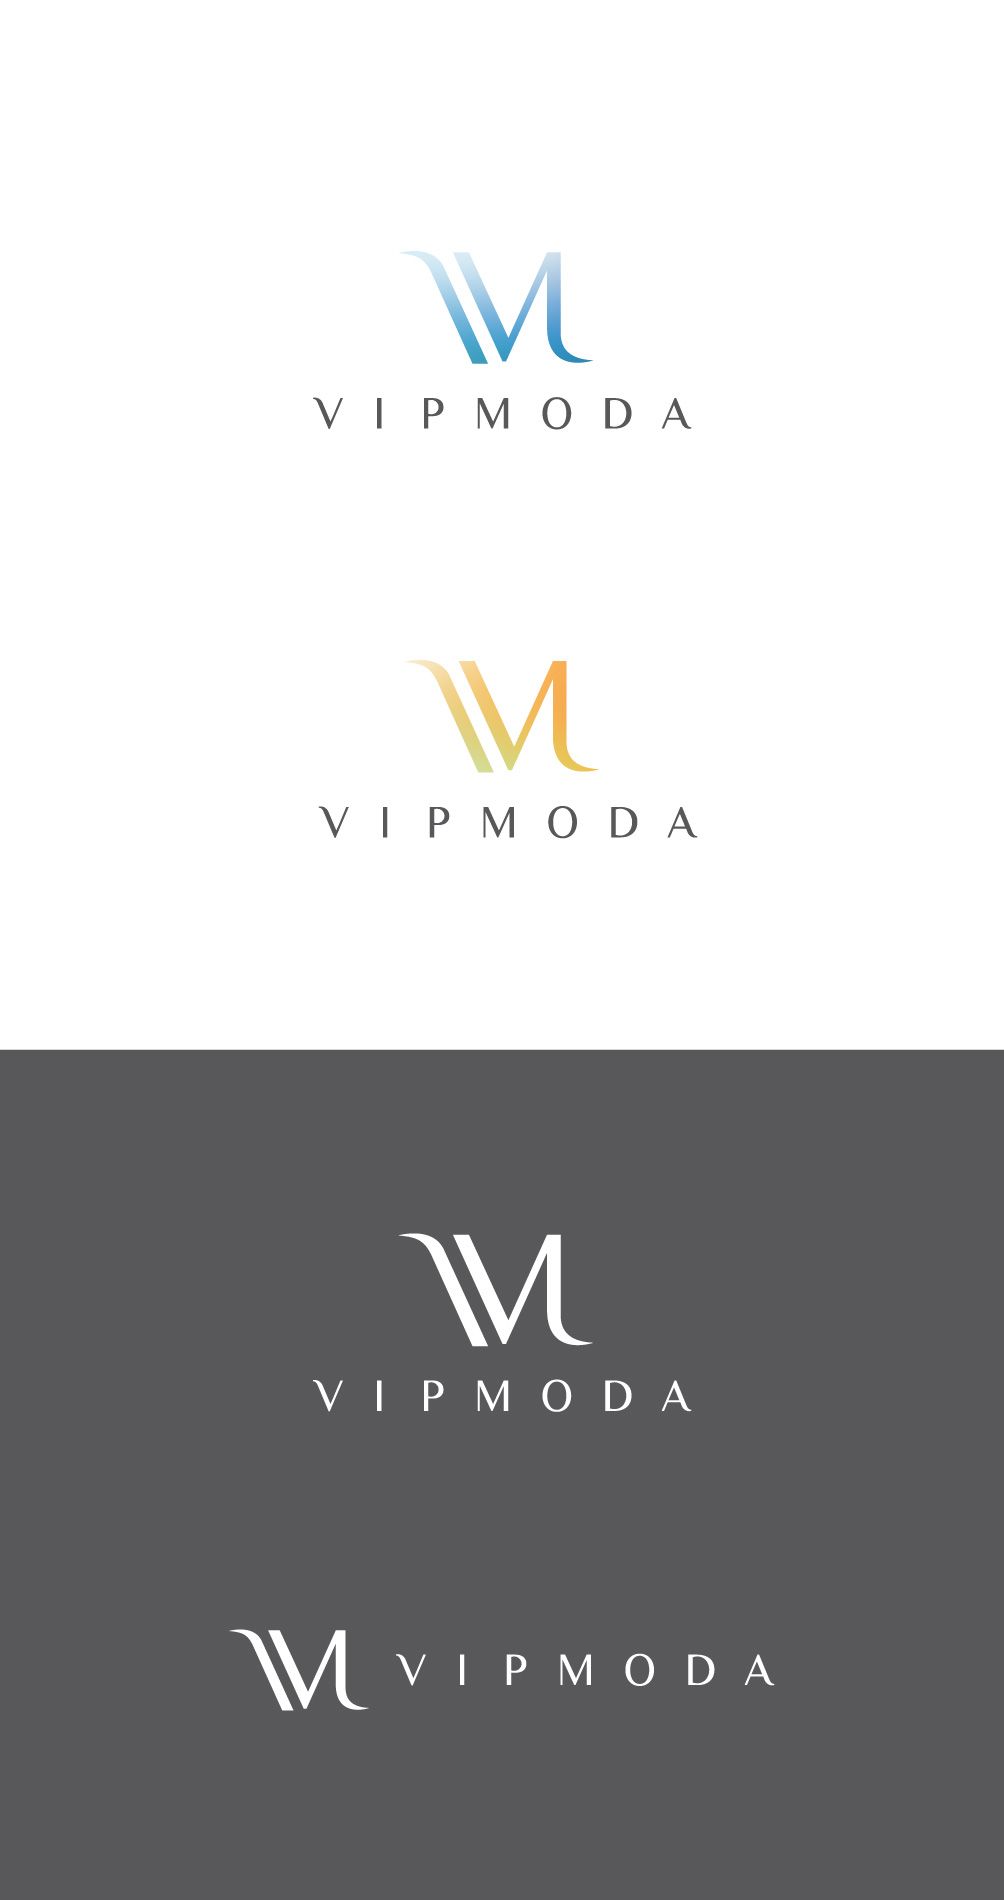 Лого и фирменный стиль компании ВИПМОДА  - дизайнер exilim-uncor